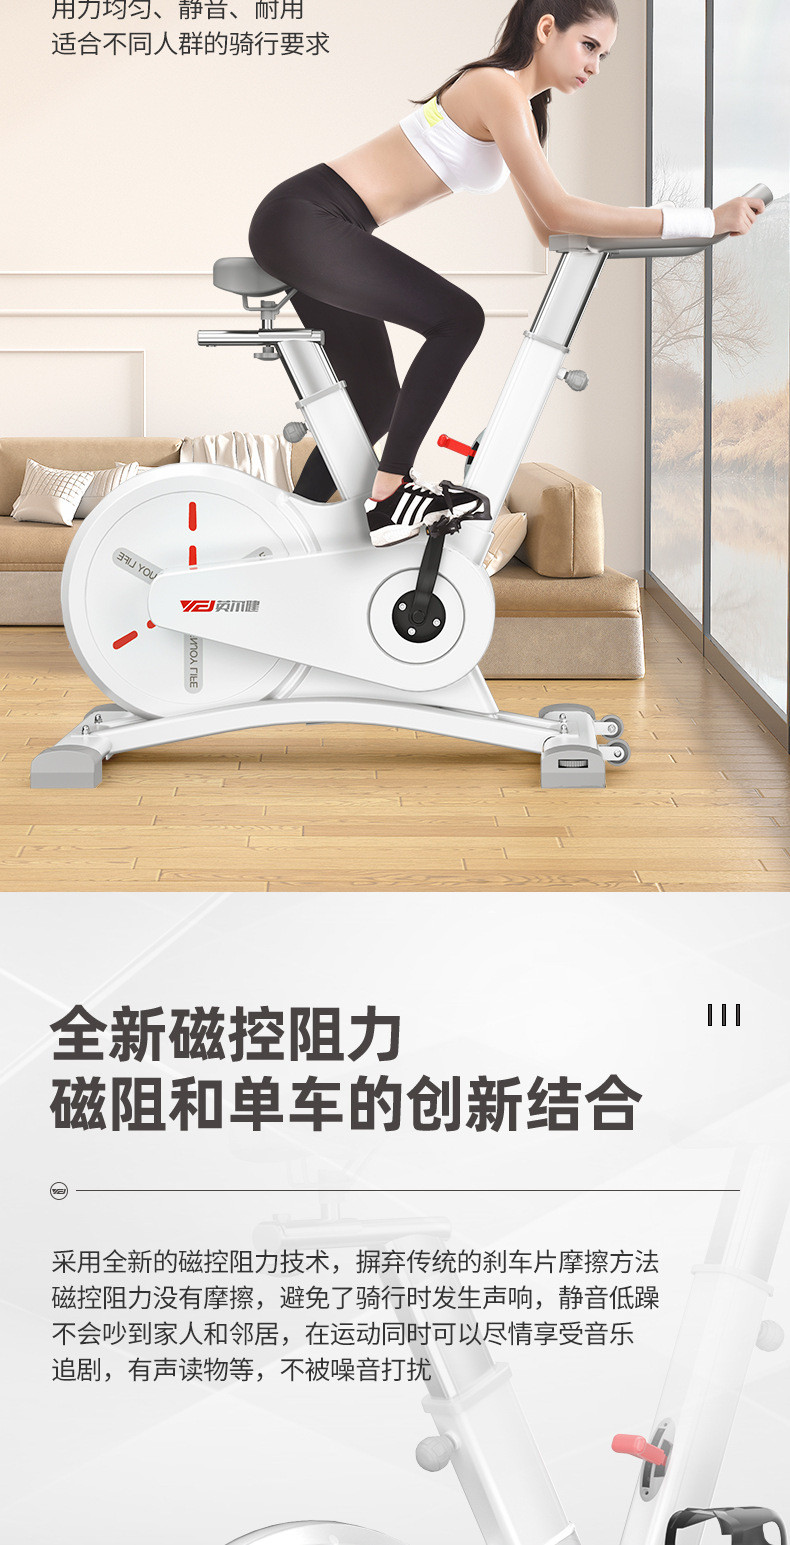 汤河店 双向电磁控椭圆机家用健身太空漫步登山机超静音大飞轮商用健身车